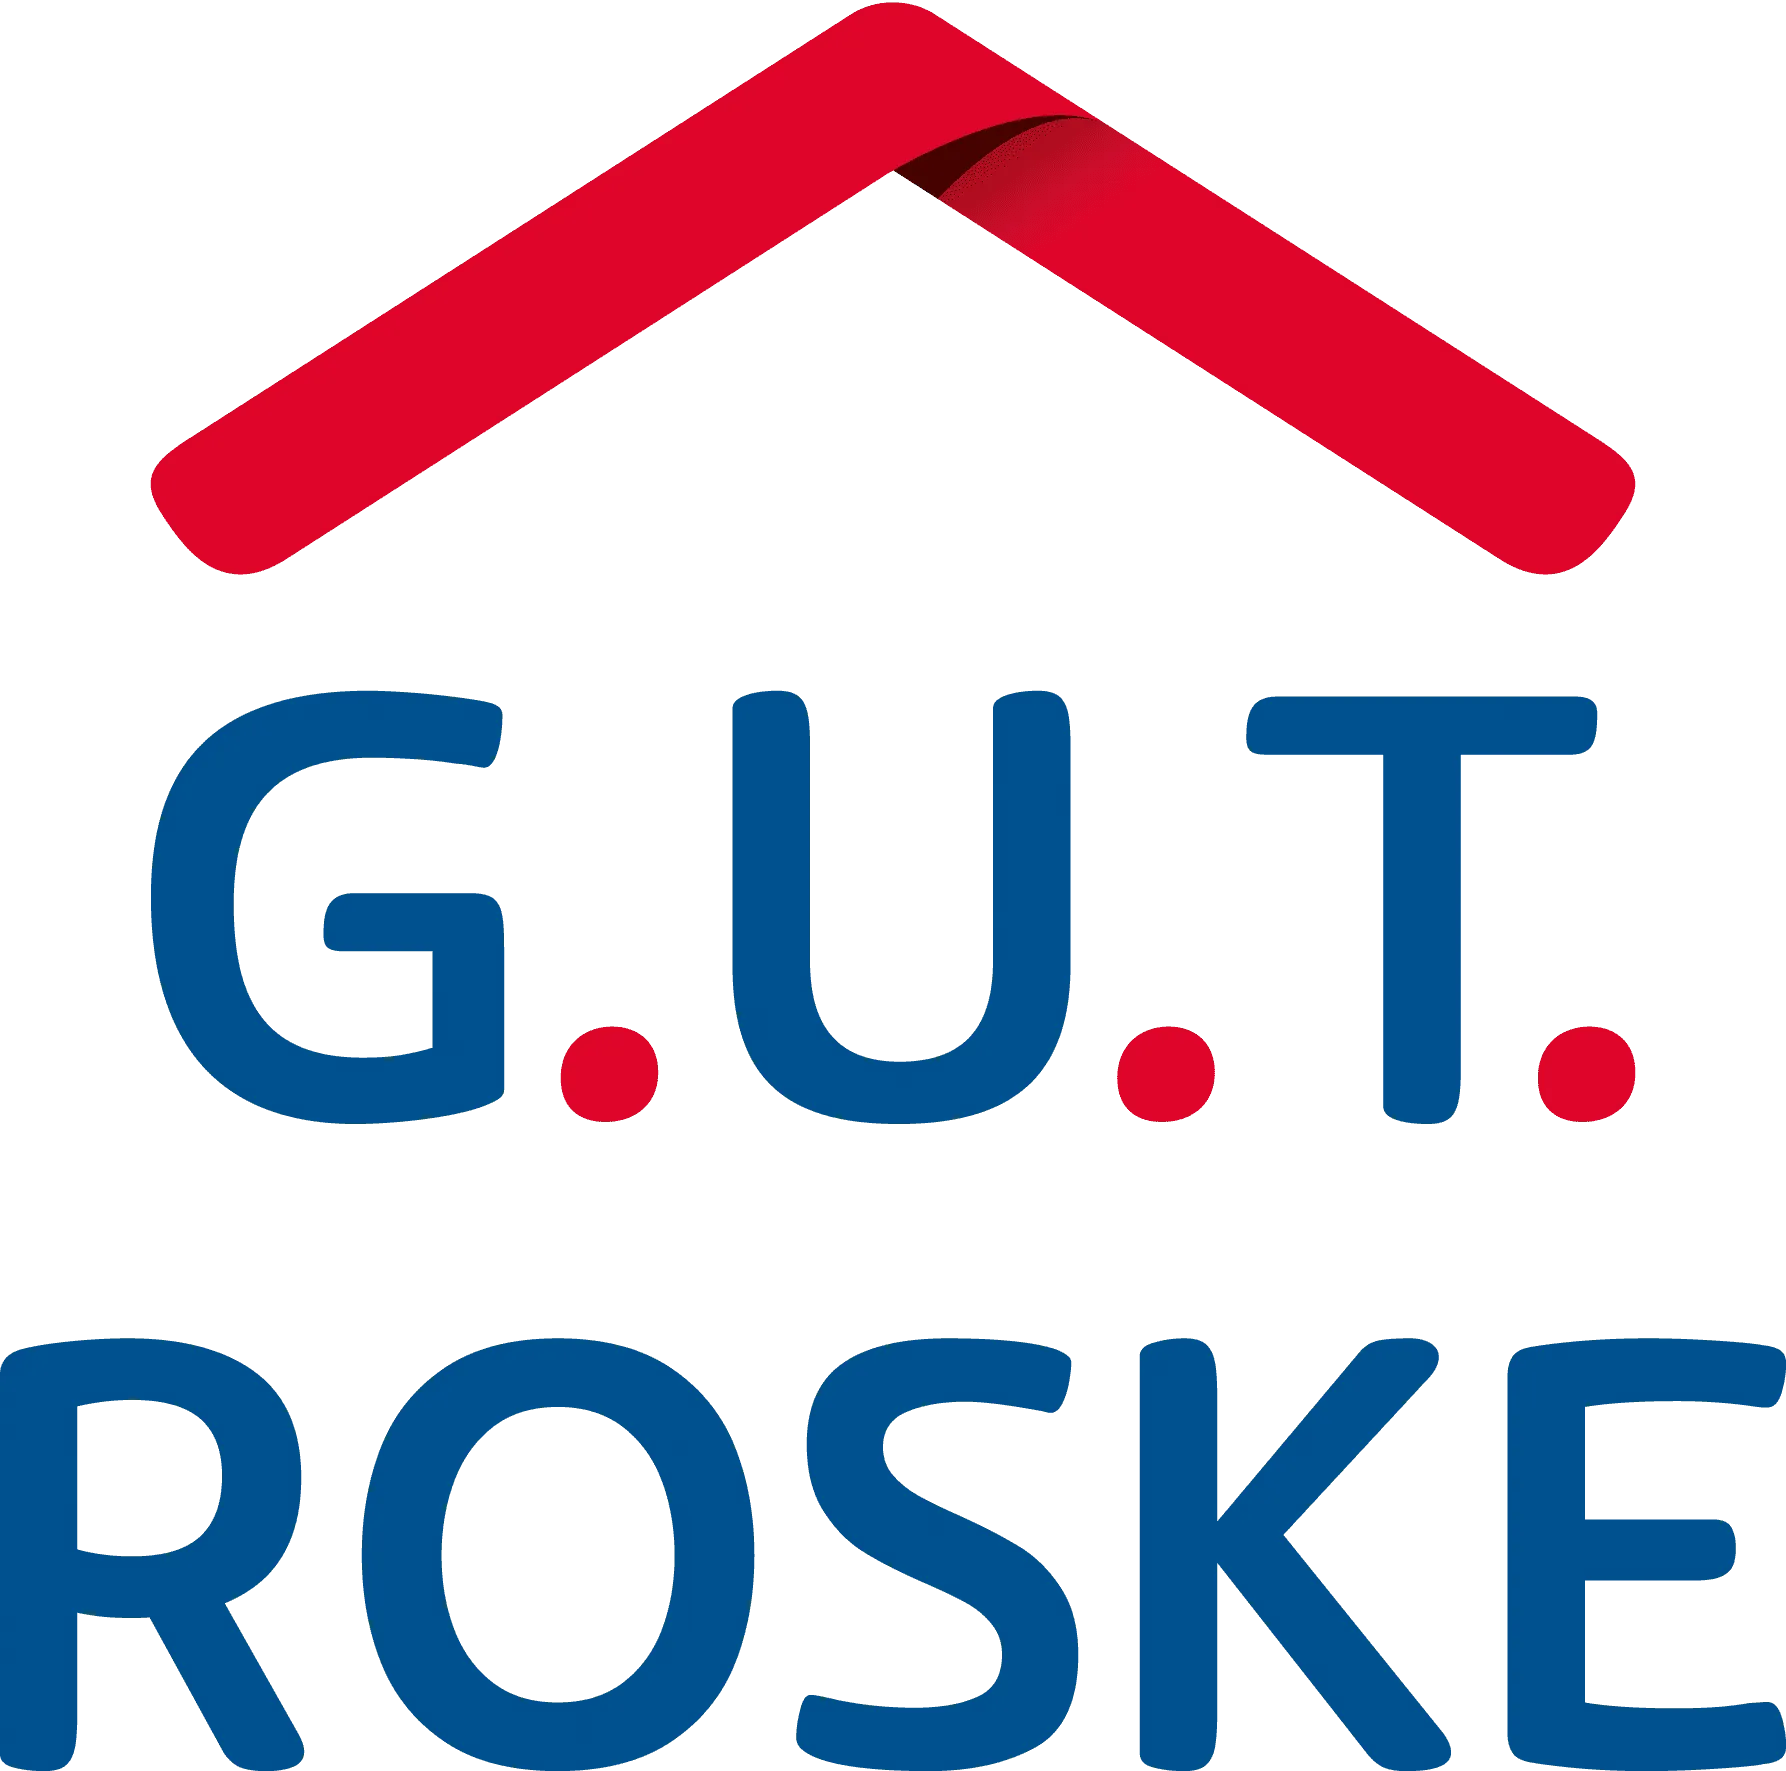 880_gut_roske_logo_4c_2021.png